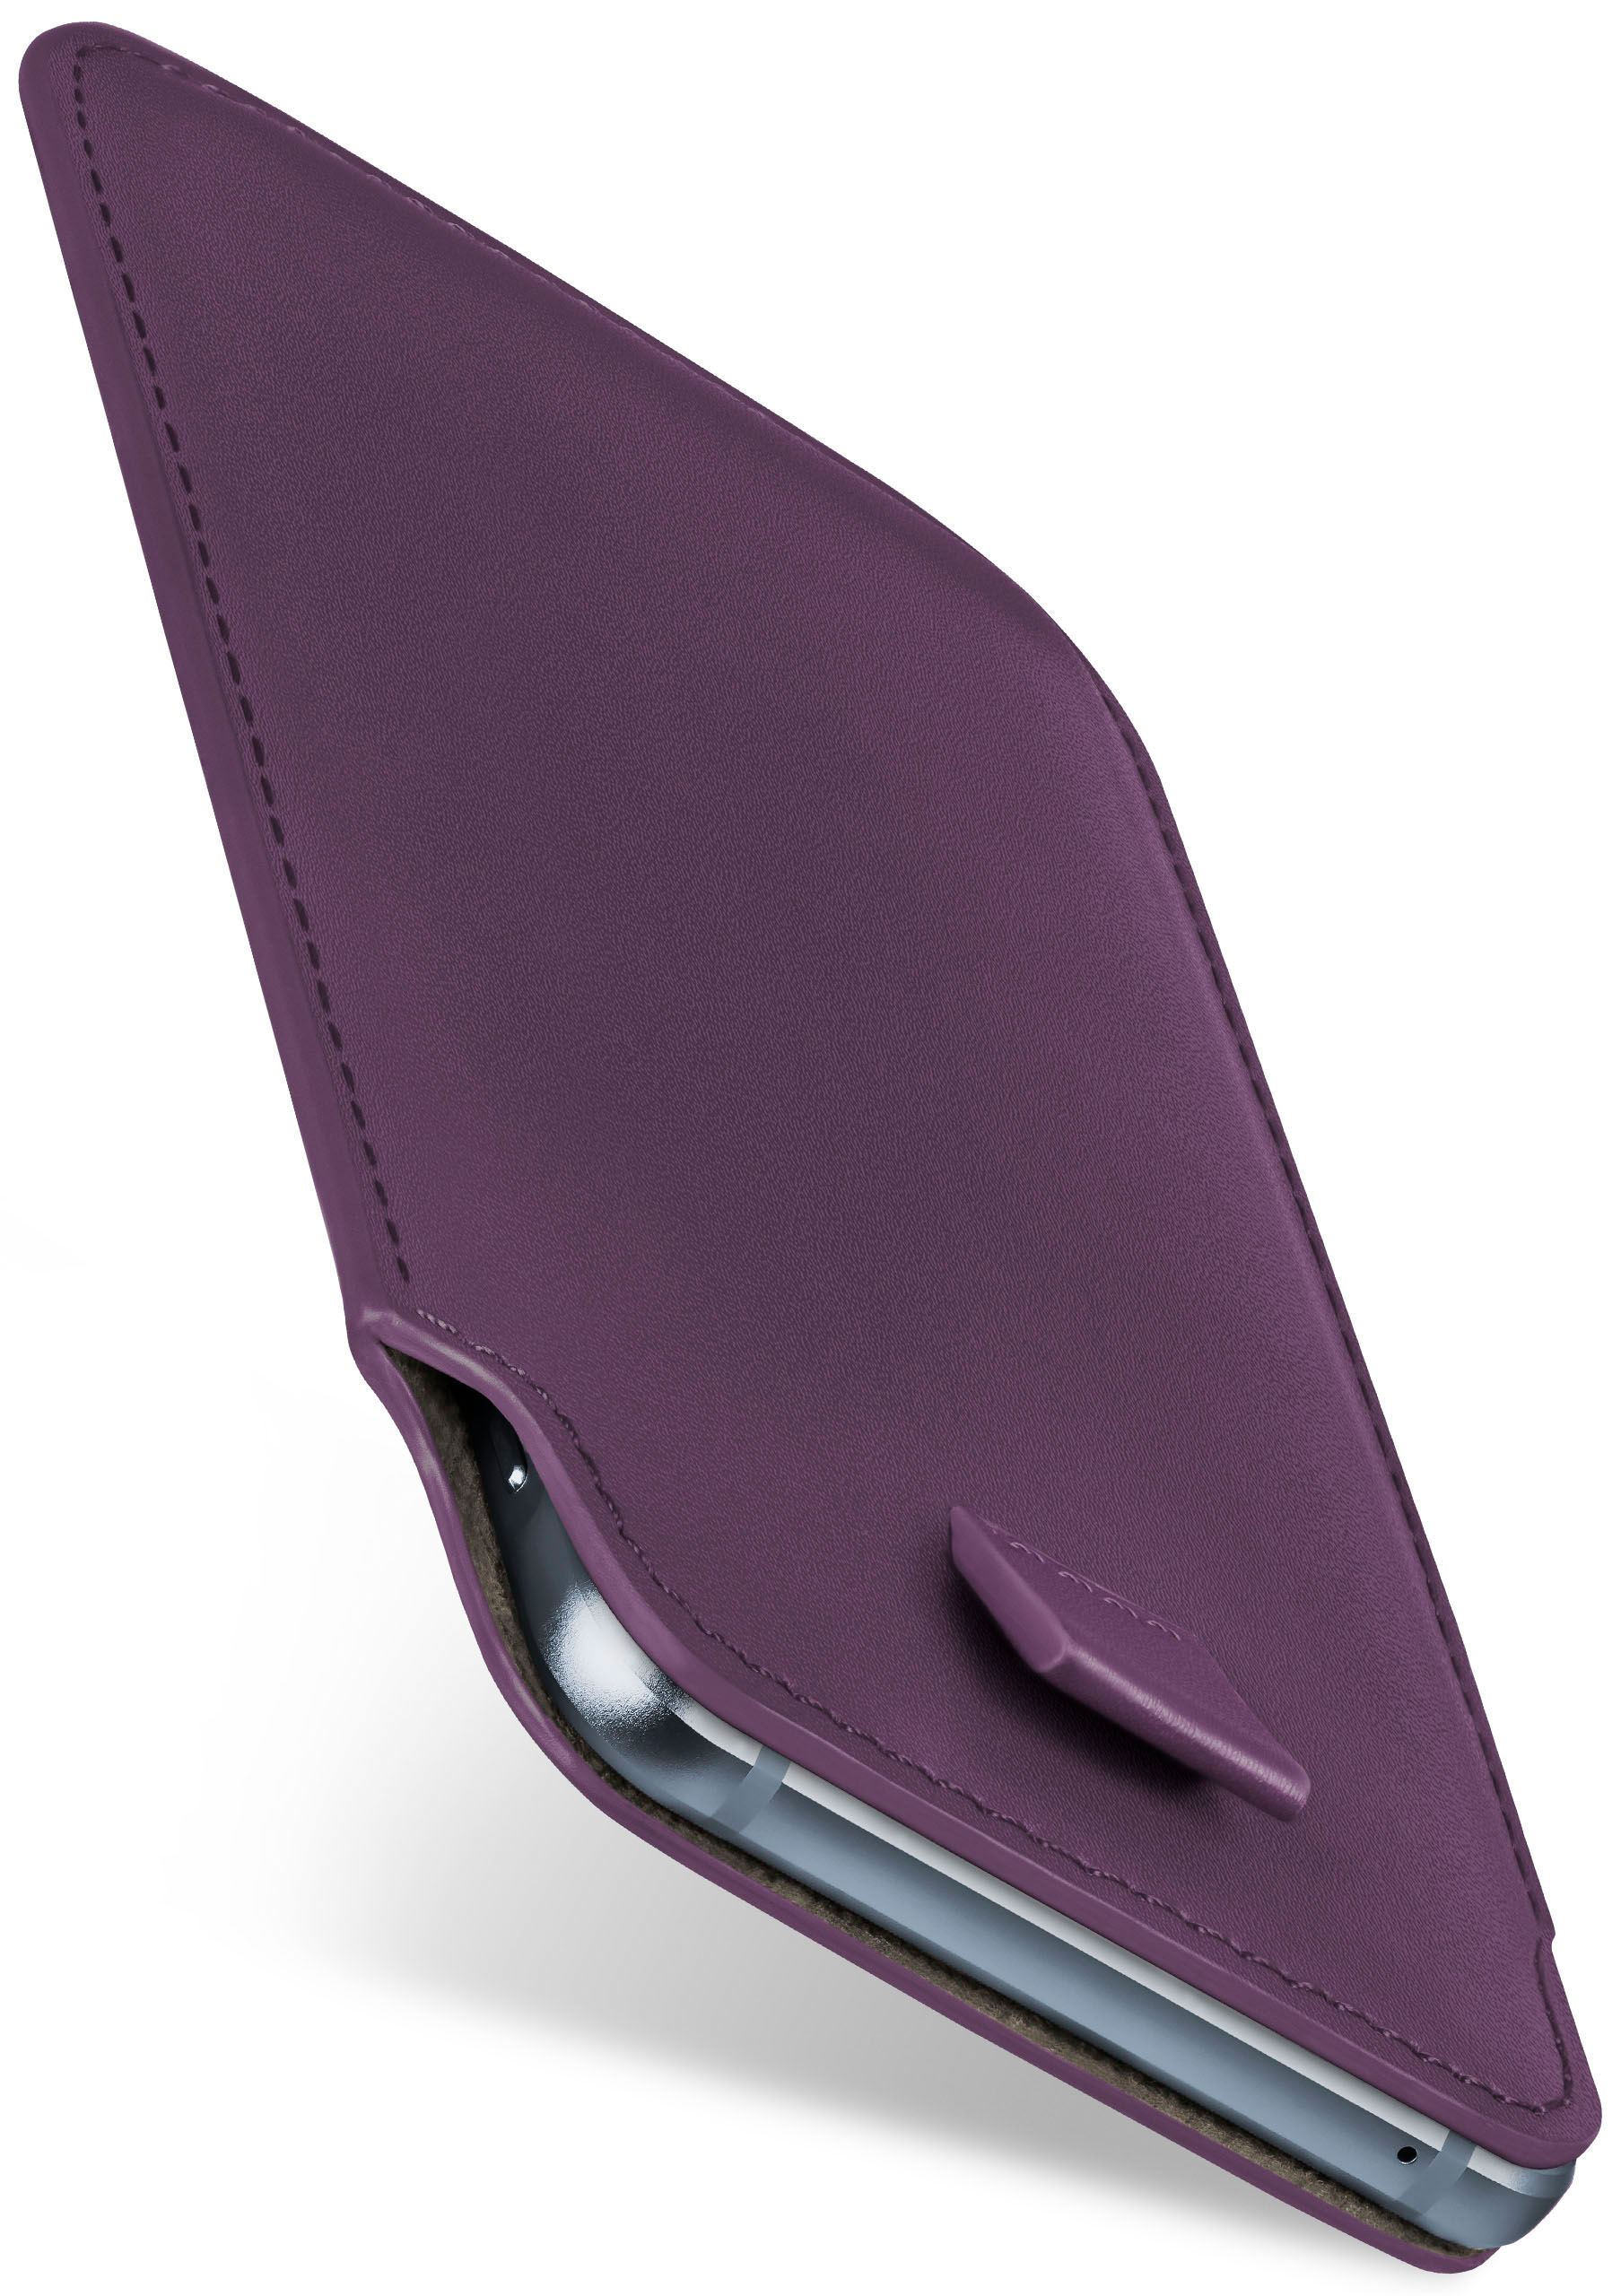 MOEX Slide Power, Full LG, Indigo-Violet X Case, Cover